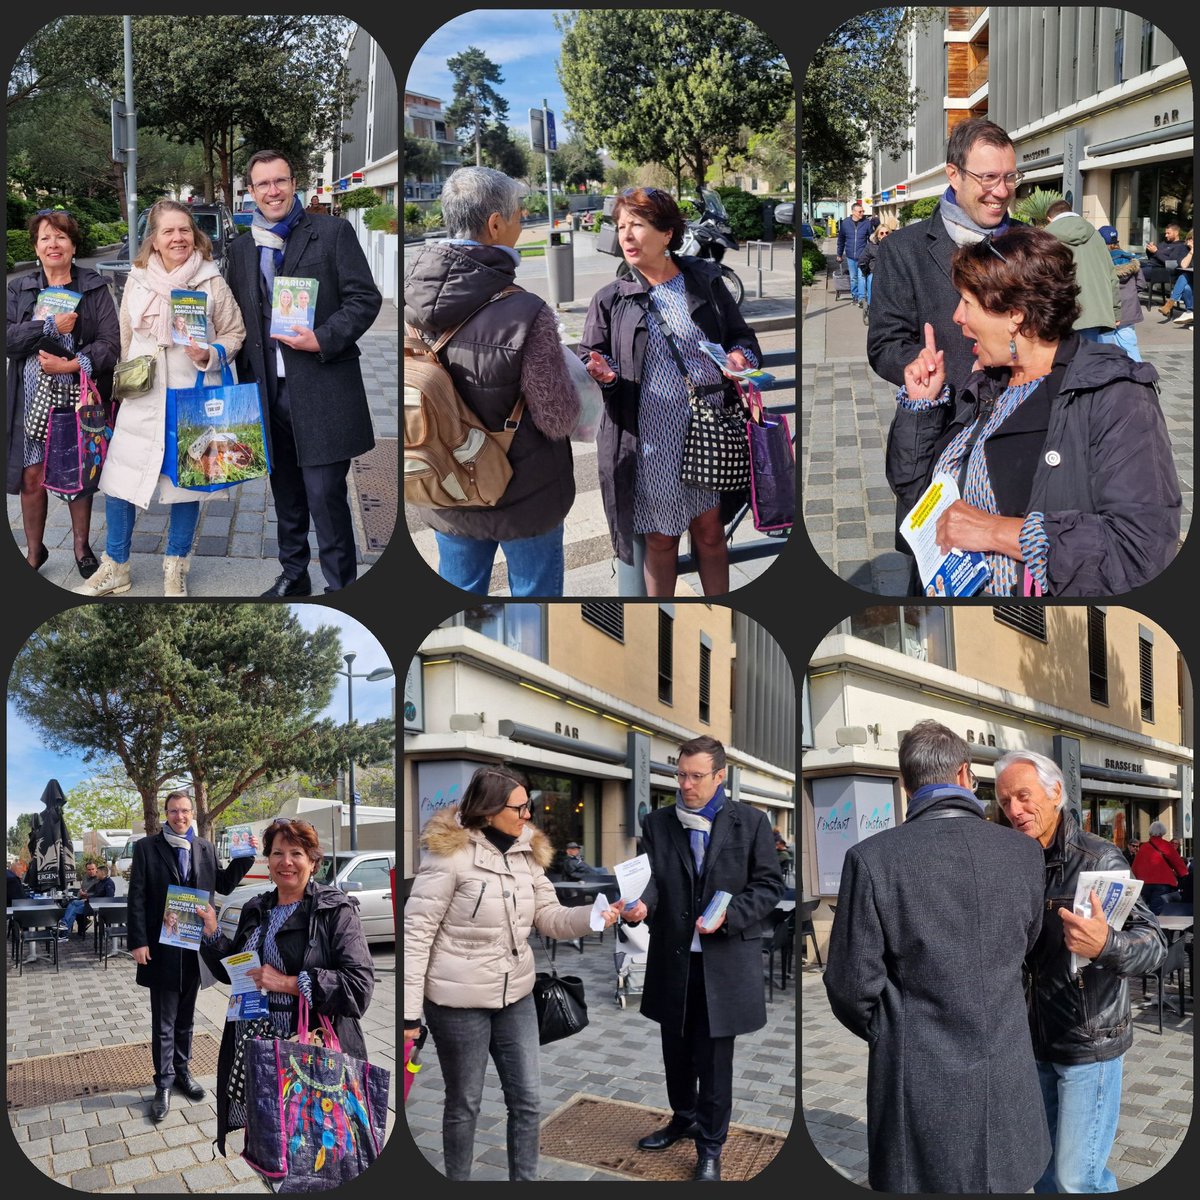 #Rhône 
#Circo6912
Ils ont pris nos tracts ce matin sur le marché de #TassinLaDemiLune....
Un tiers des gens sont d'accord avec nous, le disent et iront aux urnes le 9 juin prochain pour faire valoir le ' #VotezMarion ! ' #Reconquête #ECR